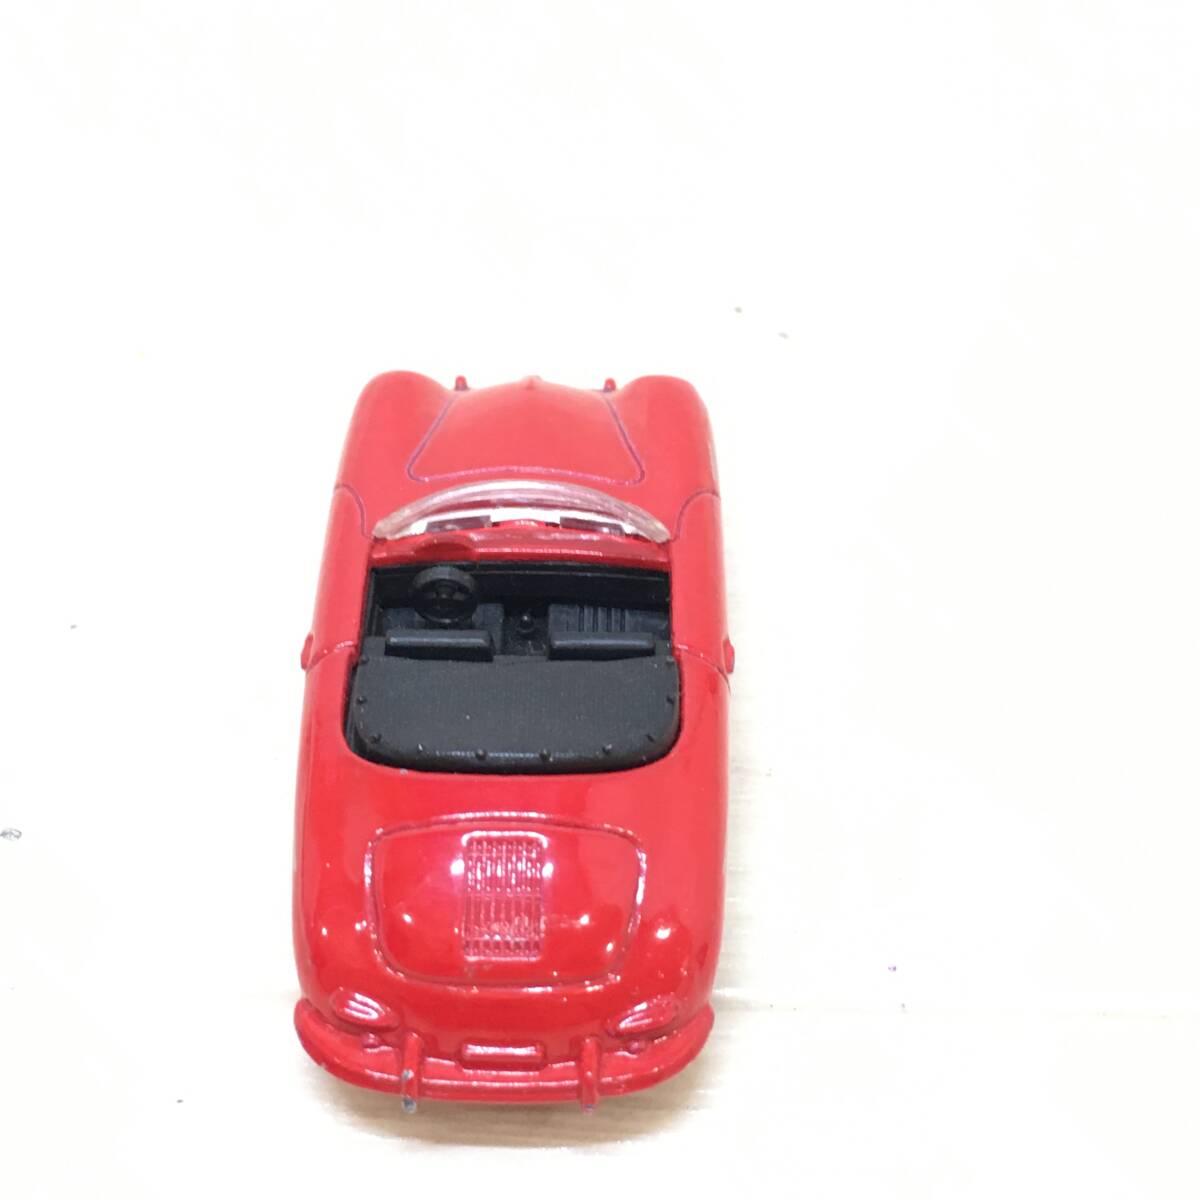 ΣTOMICA トミカ ミニカー ポルシェ レッド 赤色 オープンカー 車 乗用車 おもちゃ 乗り物 コレクション 長期保管 現状品ΣC52817_画像4